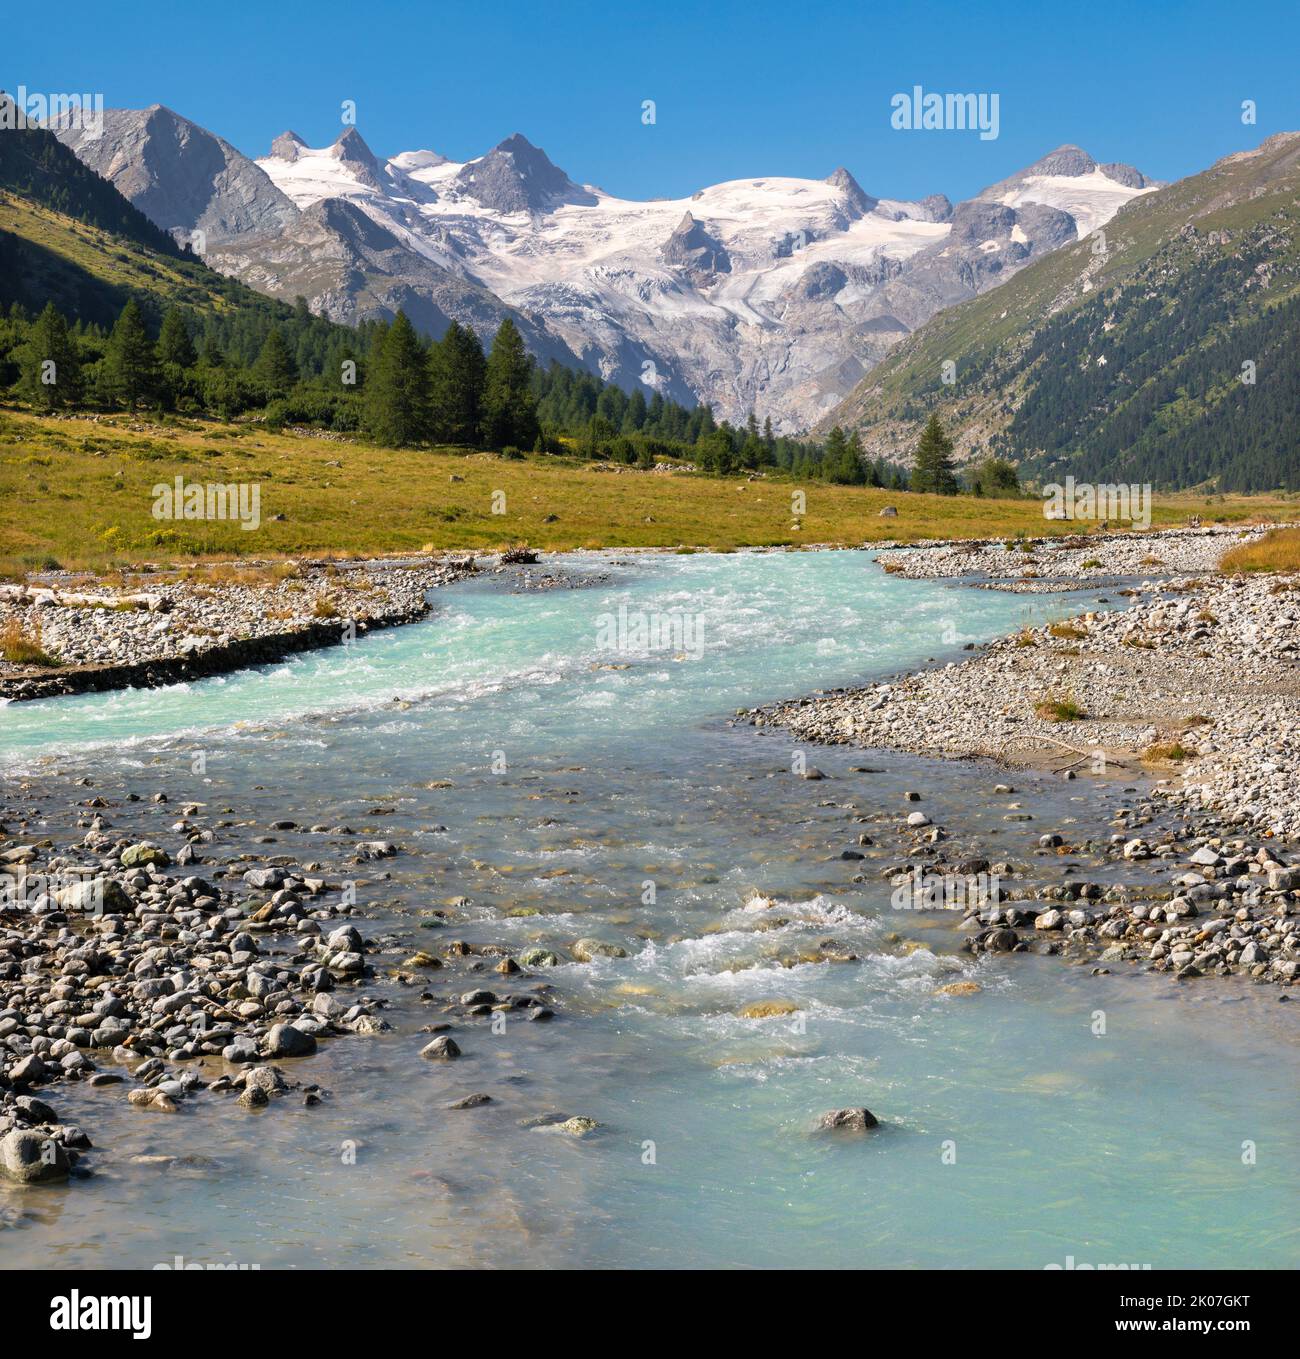 Suiza - El valle de Roseg bajo los picos Il Caputschin, La Muongia, Forcola Alta y el glaciar Roseg. Foto de stock